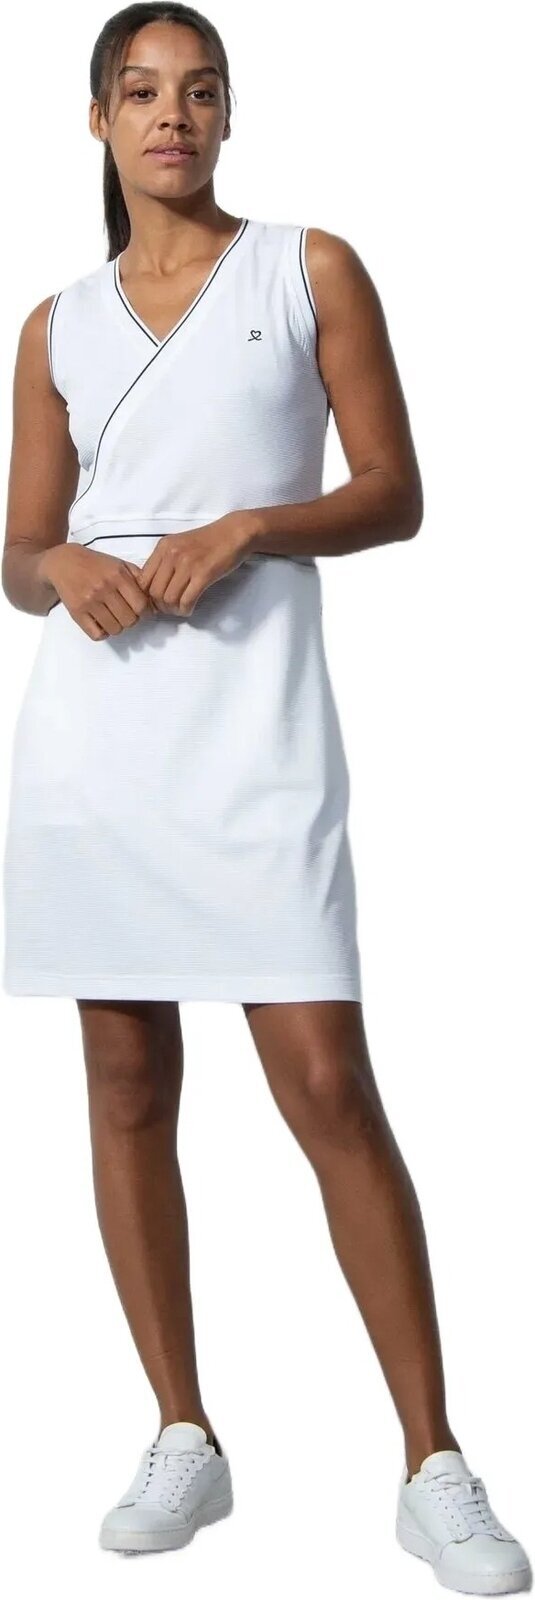 Gonne e vestiti Daily Sports Paris Sleeveless Dress White M